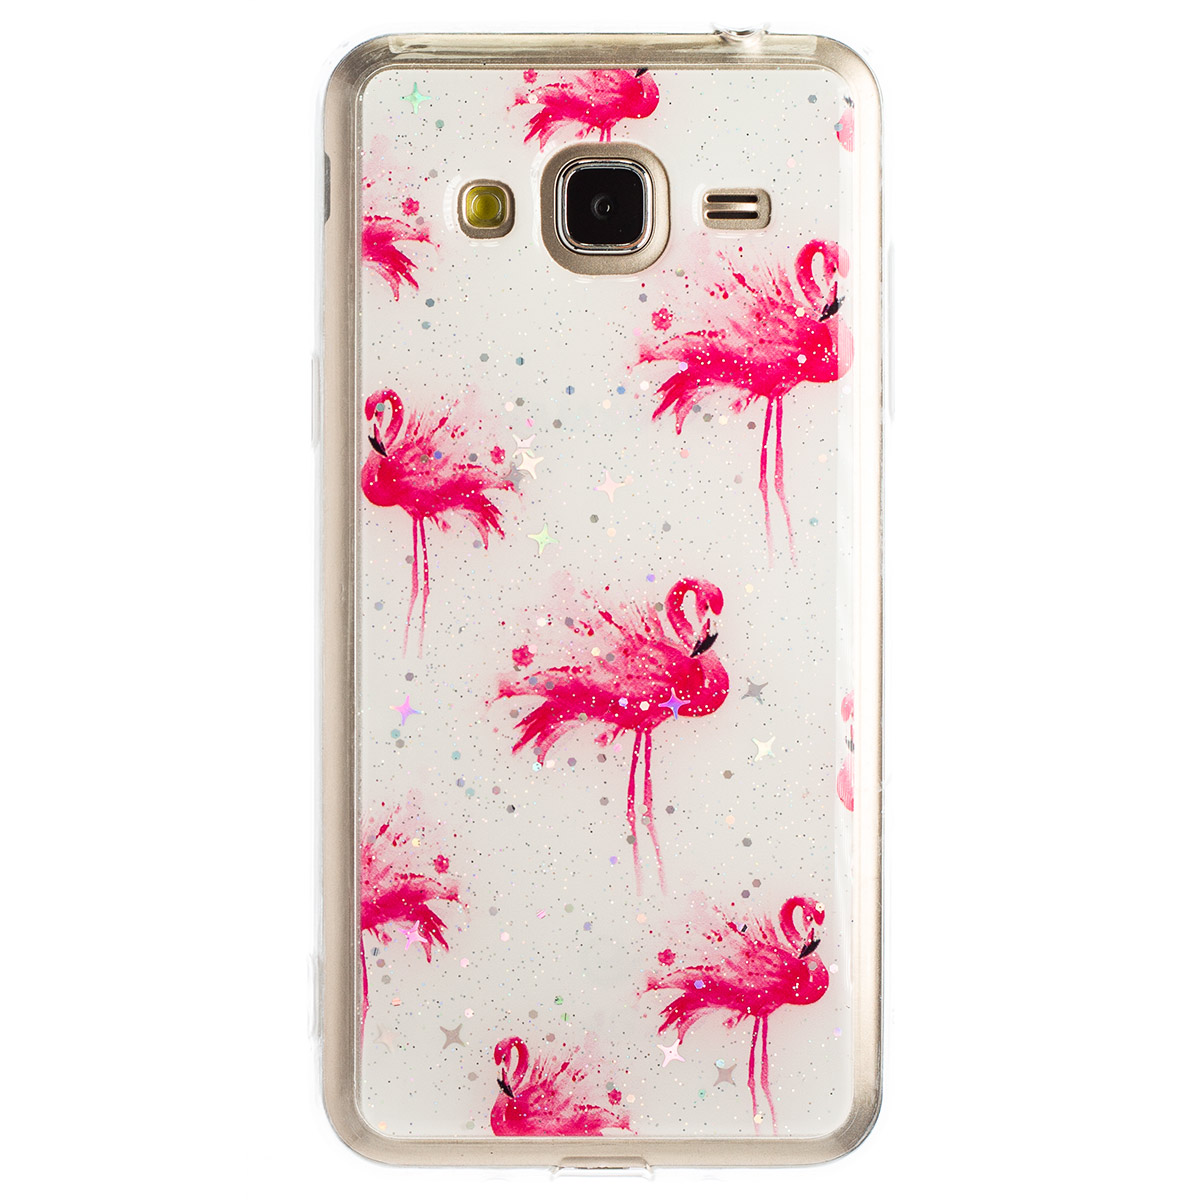 Husa Fashion Samsung Galaxy J3 2016, Flamingo thumb